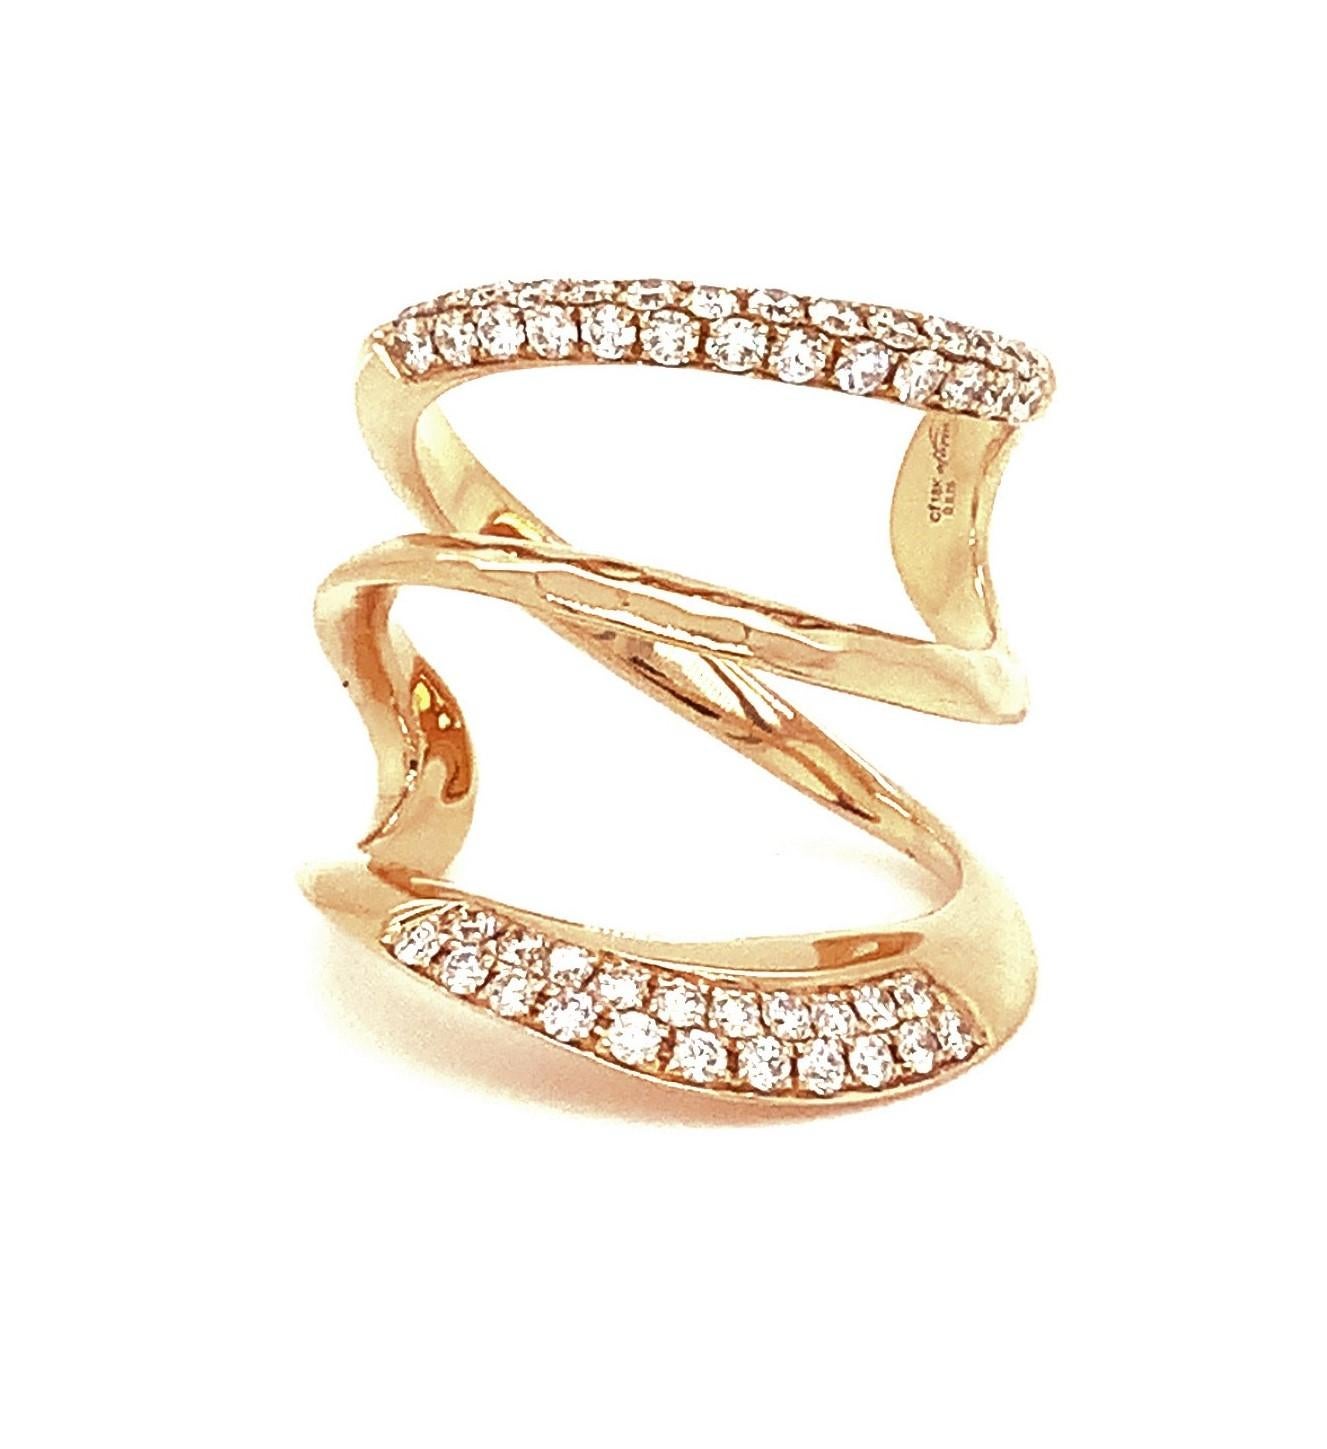  Dieser faszinierende Afarin Collection'S Triple Band Wide Knuckle Diamond Ring in 18Kt Rose Gold ist hochglanzpoliert und verfügt über ein Gesamtgewicht von 0,76ct Brillantschliff Diamanten von G Farbe und SI Klarheit. Mit einer beeindruckenden